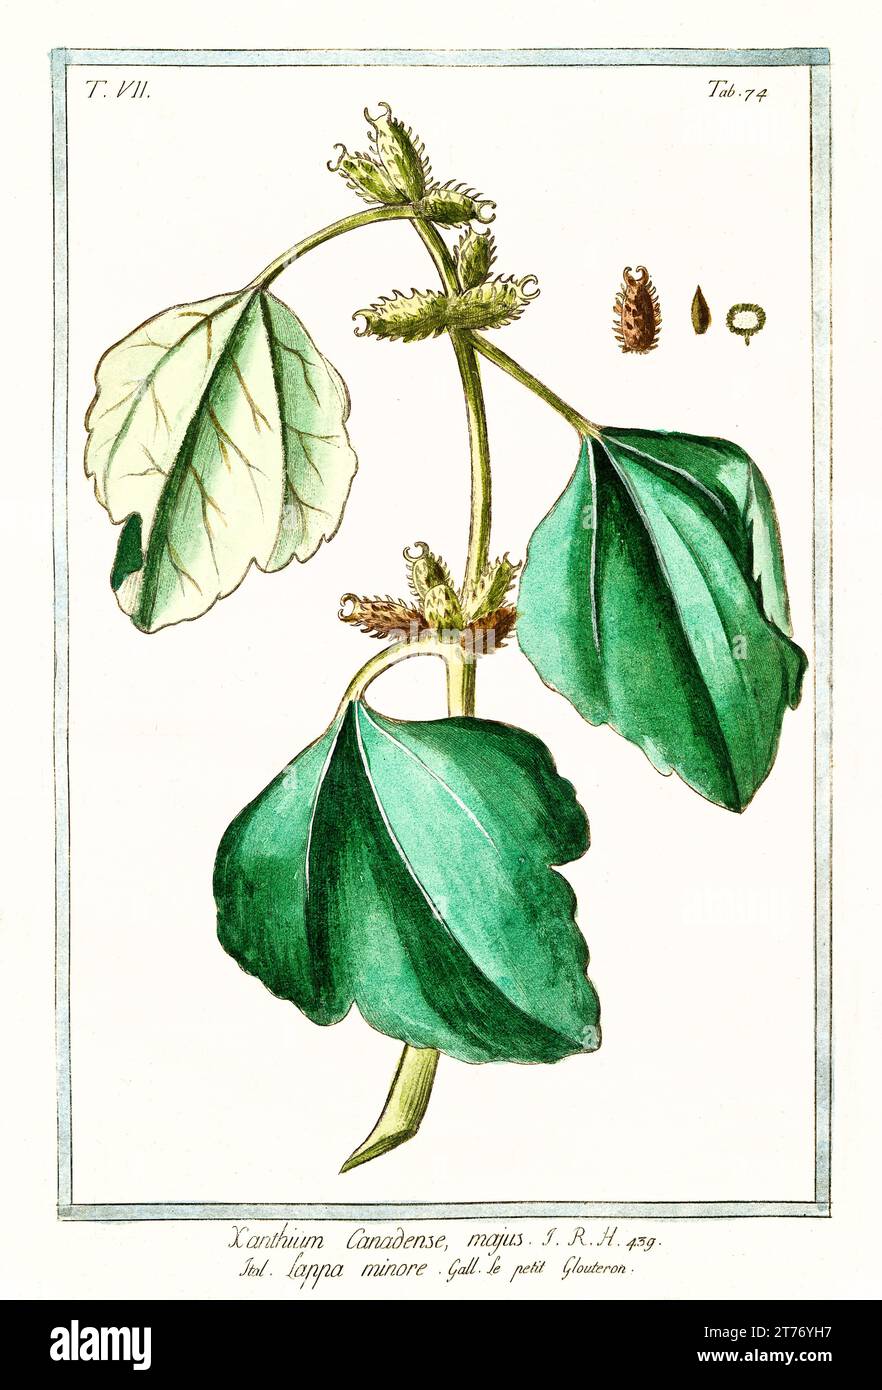 Vieille illustration de cocklebur commun (Xanthium spinosum). Par G. Bonelli sur Hortus Romanus, publ. N. Martelli, Rome, 1772 – 93 Banque D'Images